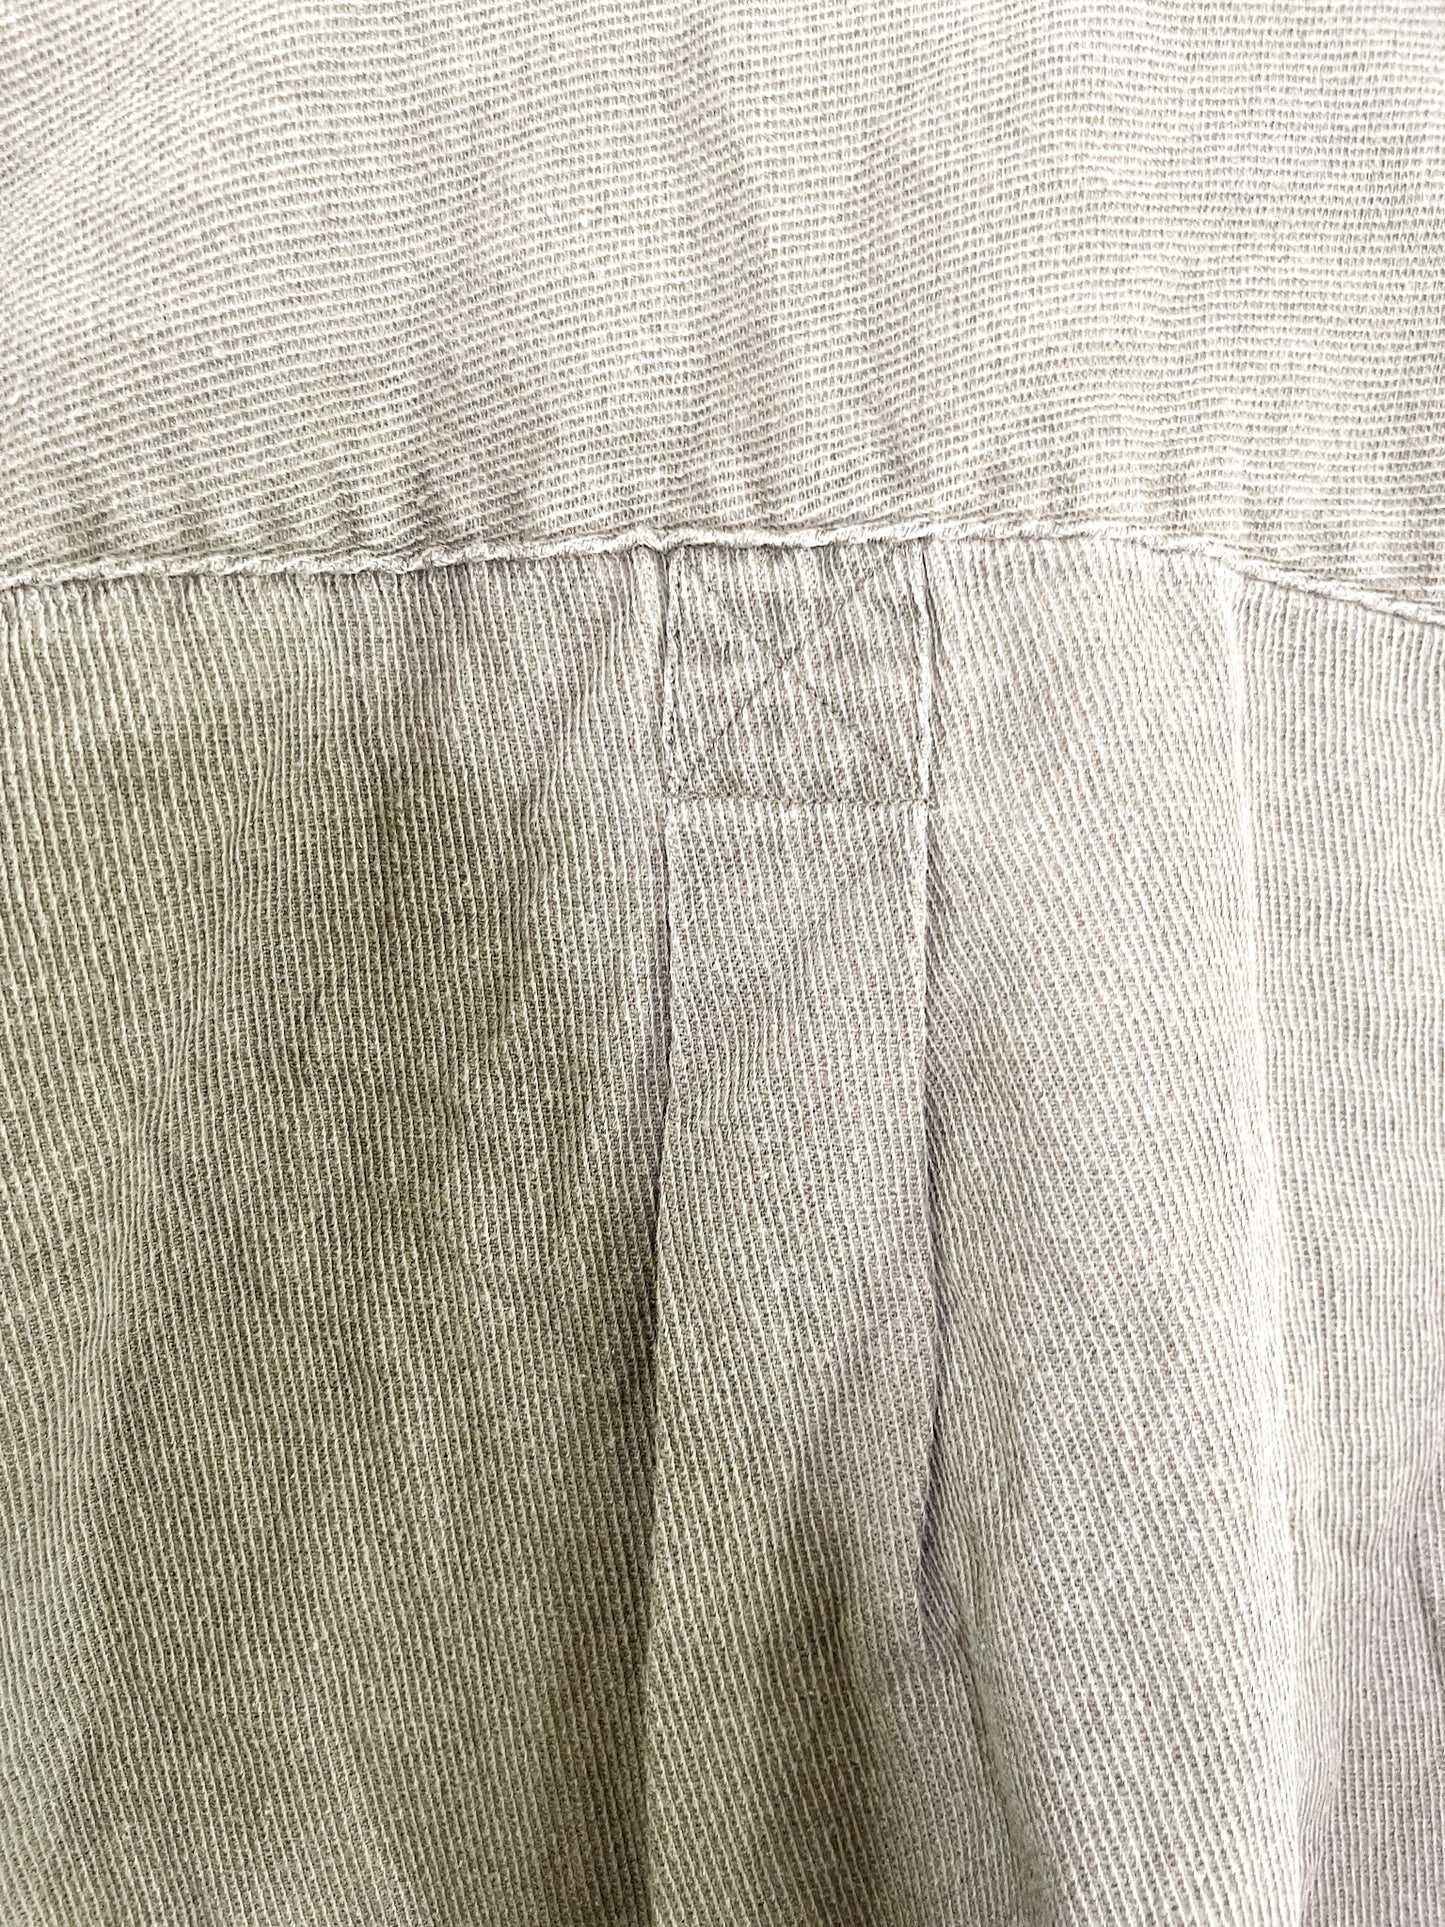 Eddie Bauer Brown Long Sleeved Corduroy Shirt | Vintage 2XL Brown Long Sleeved Corduroy shirt